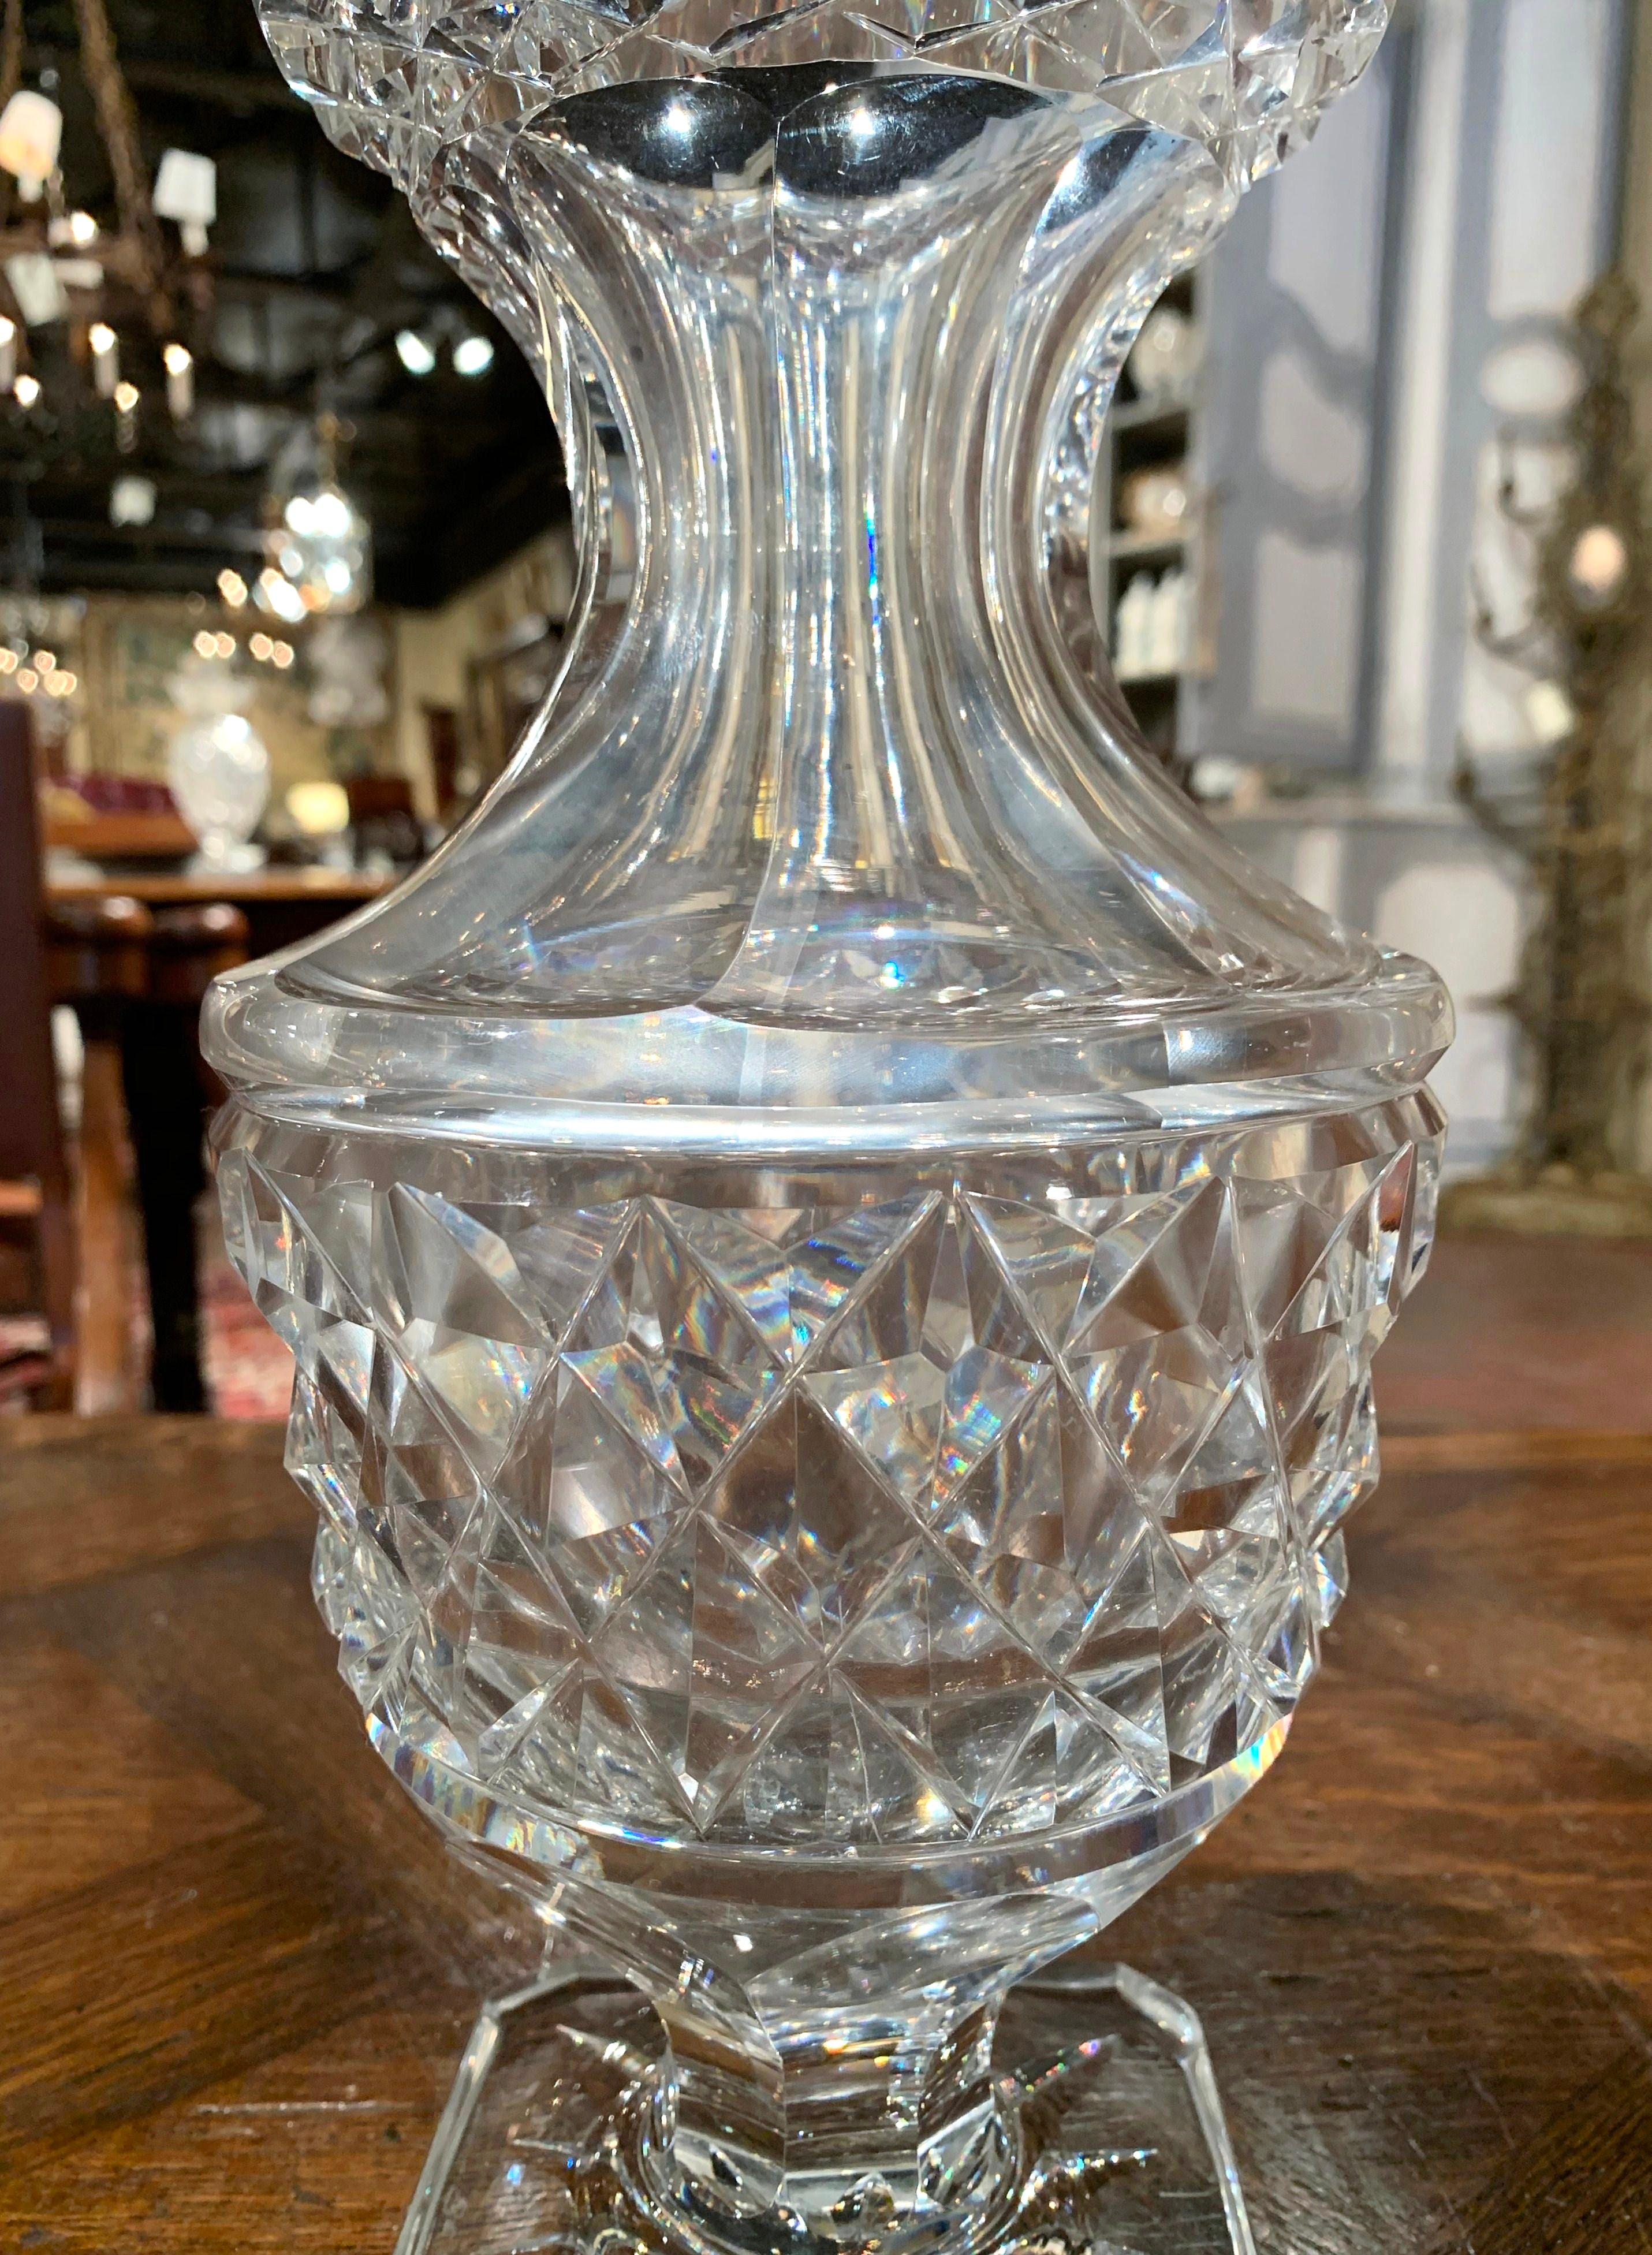 Décorez une table console ou un buffet avec cet élégant vase en verre. Fabriqué en France vers 1970, ce luxueux récipient en verre taillé repose sur une base carrée, a la forme d'une urne néoclassique avec une large bouche au sommet, et est décoré